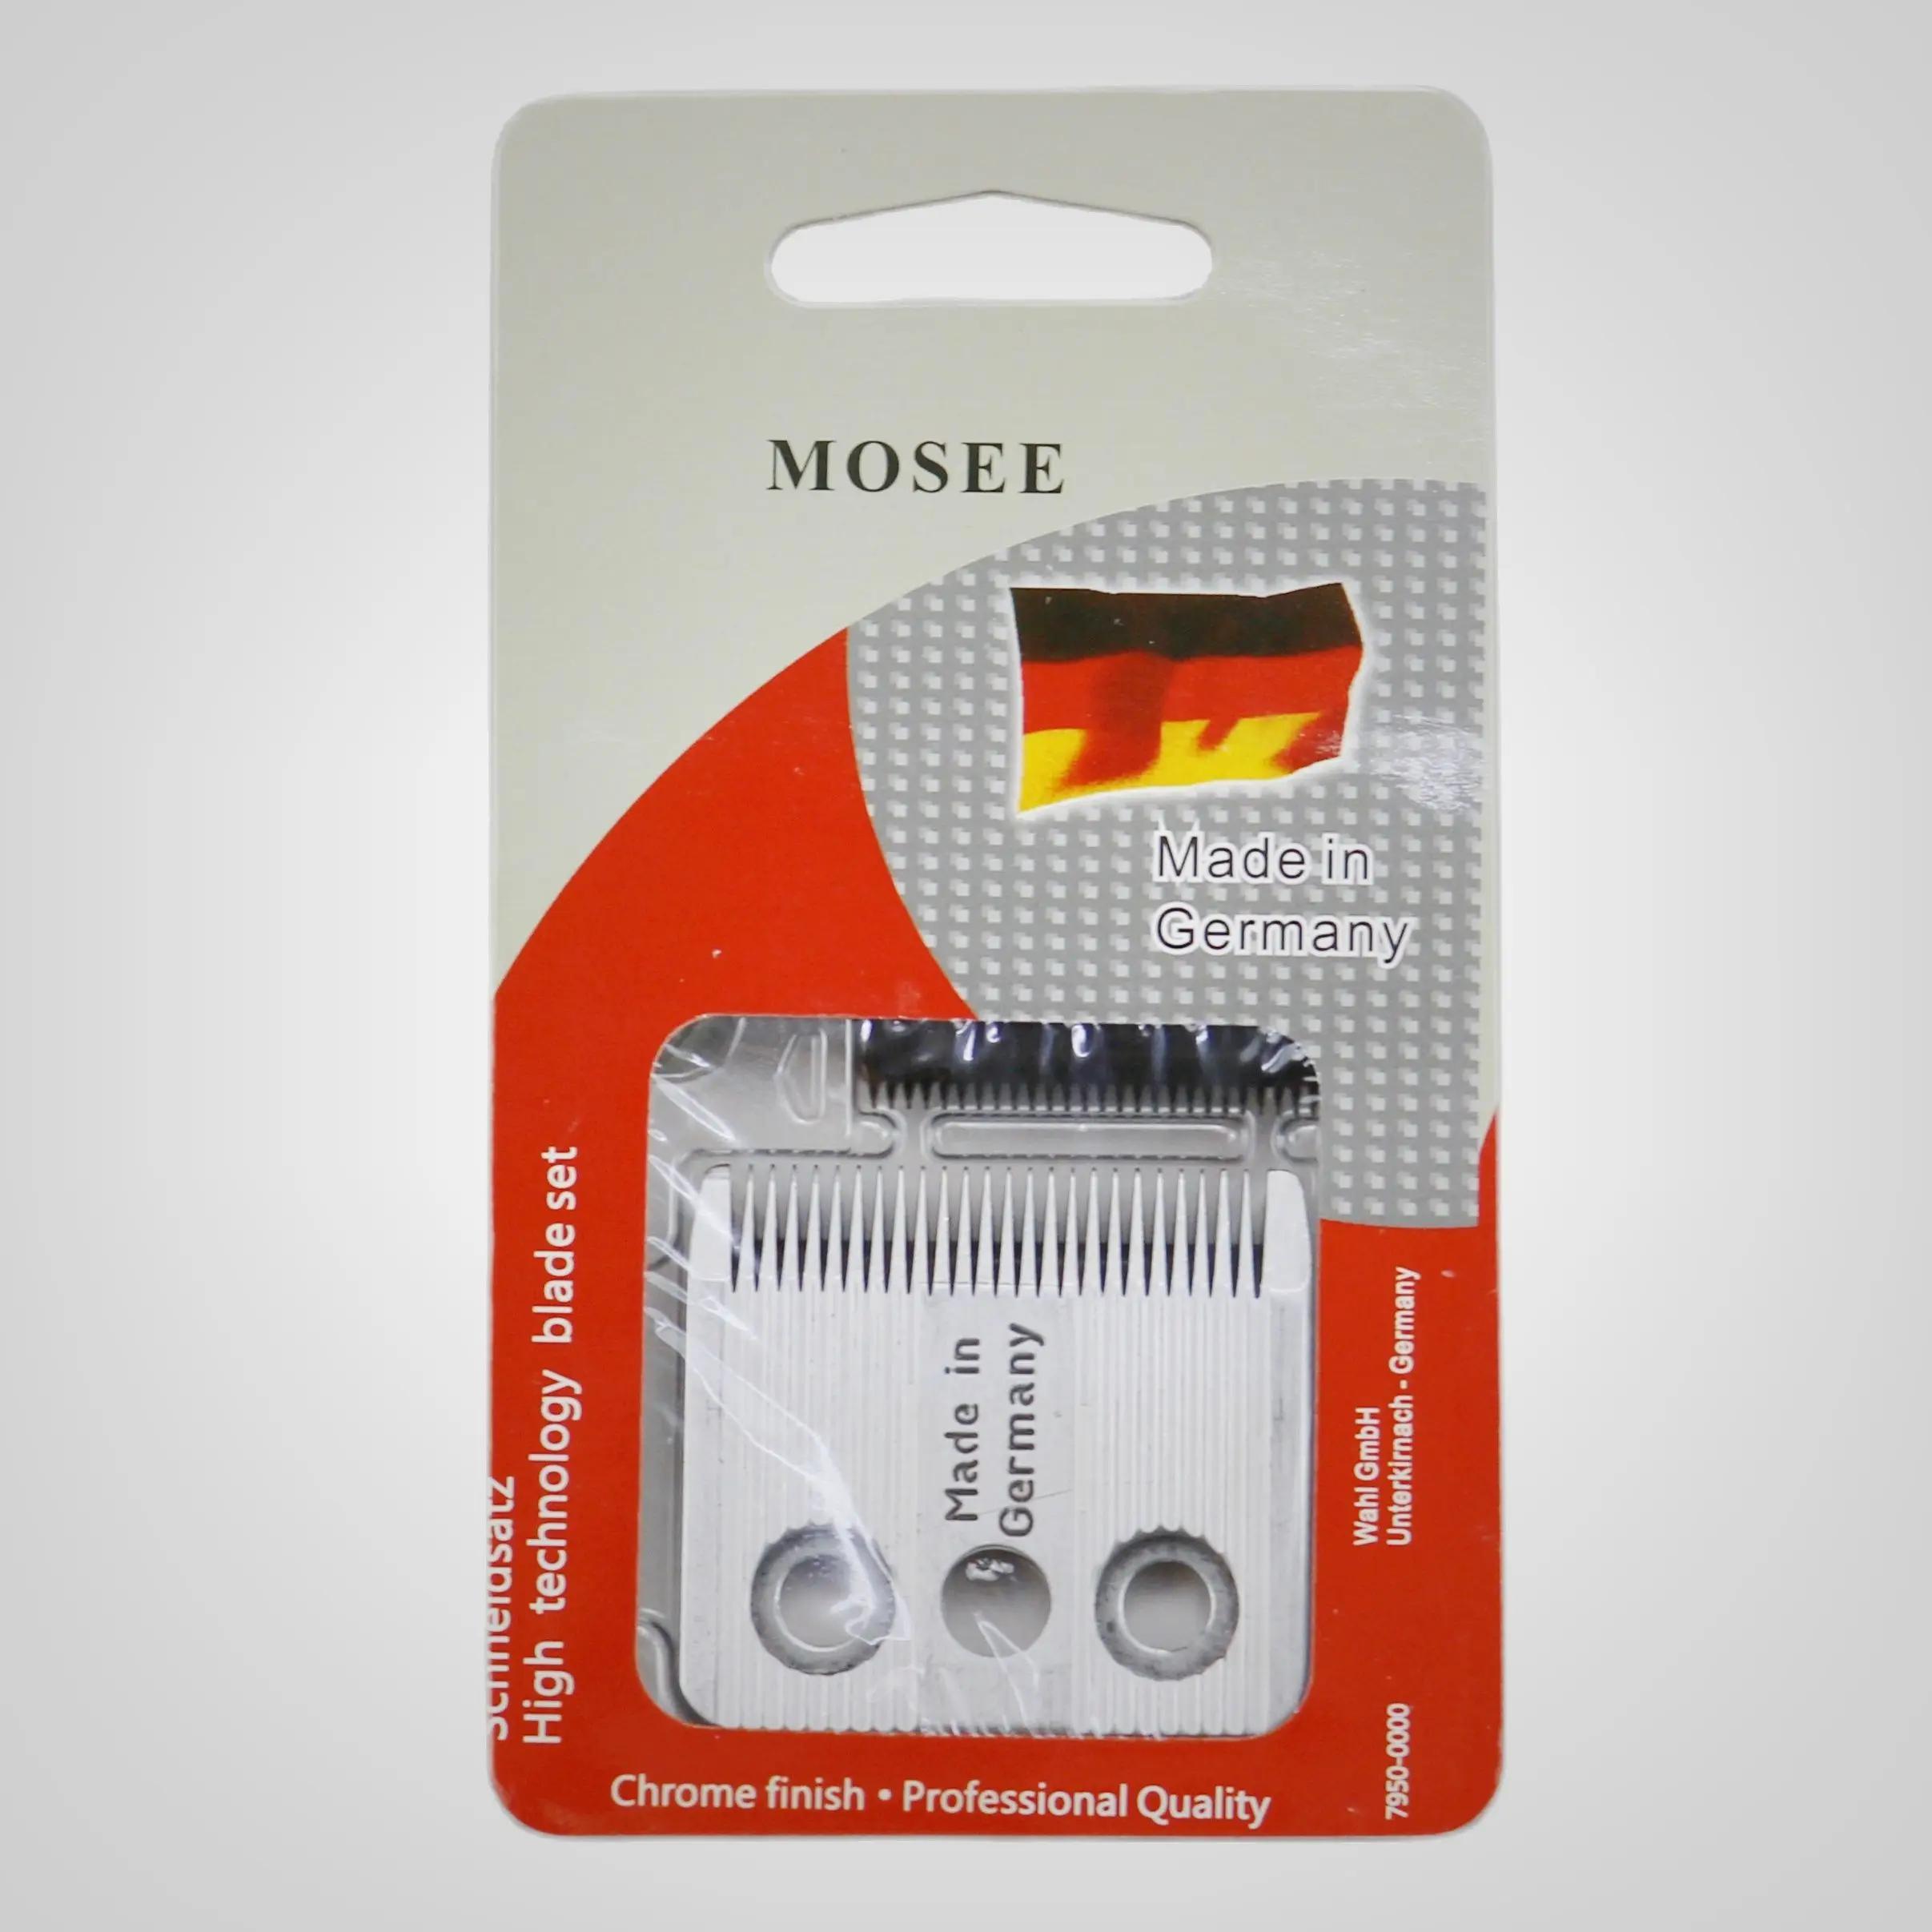 Moser hair clipper 1170(C)/ 1400(A-F) / 1420(A-C) /Ŭ..